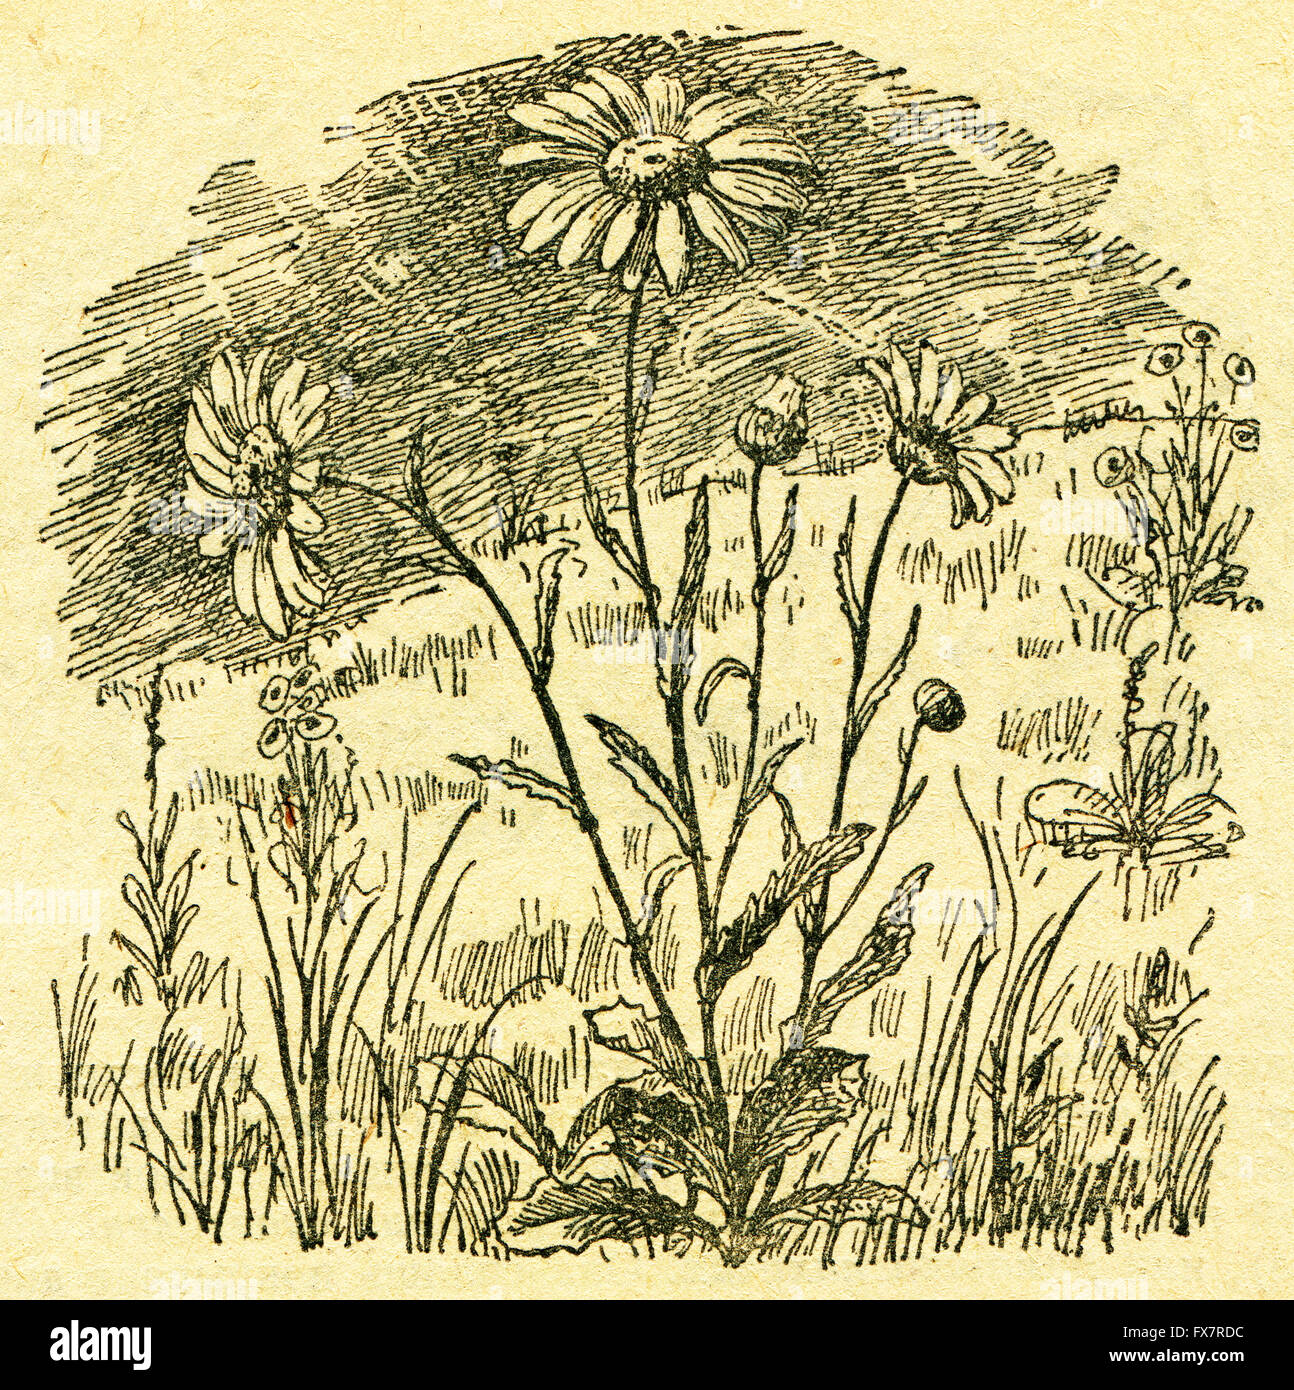 Leucanthemum vulgare, le oxeye daisy - une illustration de l'album "Dans le sillage de Robinson Crusoé', Moscou, URSS, 1946. Artiste Petr Pastukhov Banque D'Images